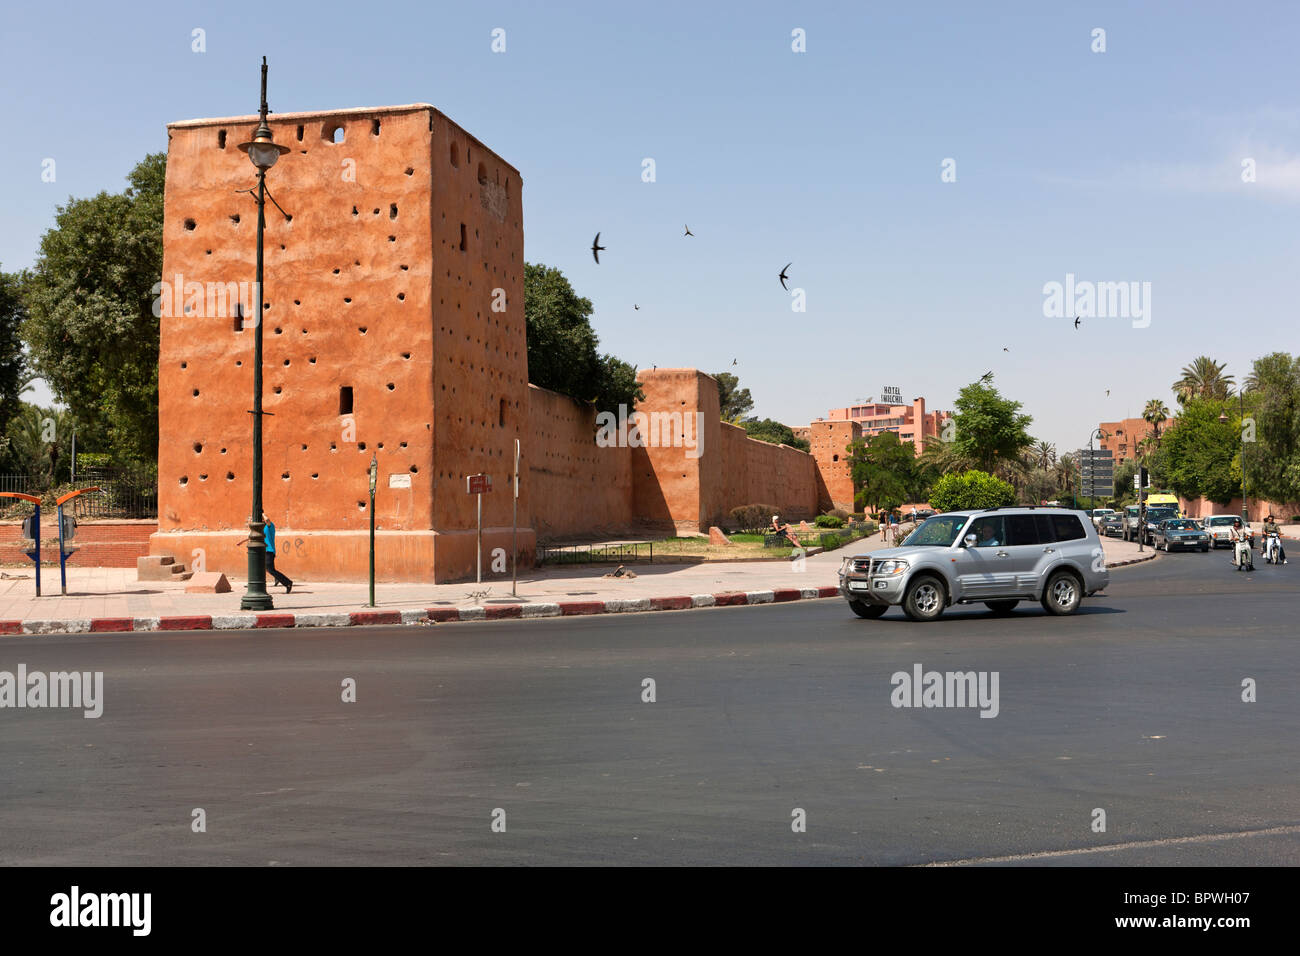 Vecchie mura della città, Marrakech, Marocco, Africa Settentrionale, Africa Foto Stock